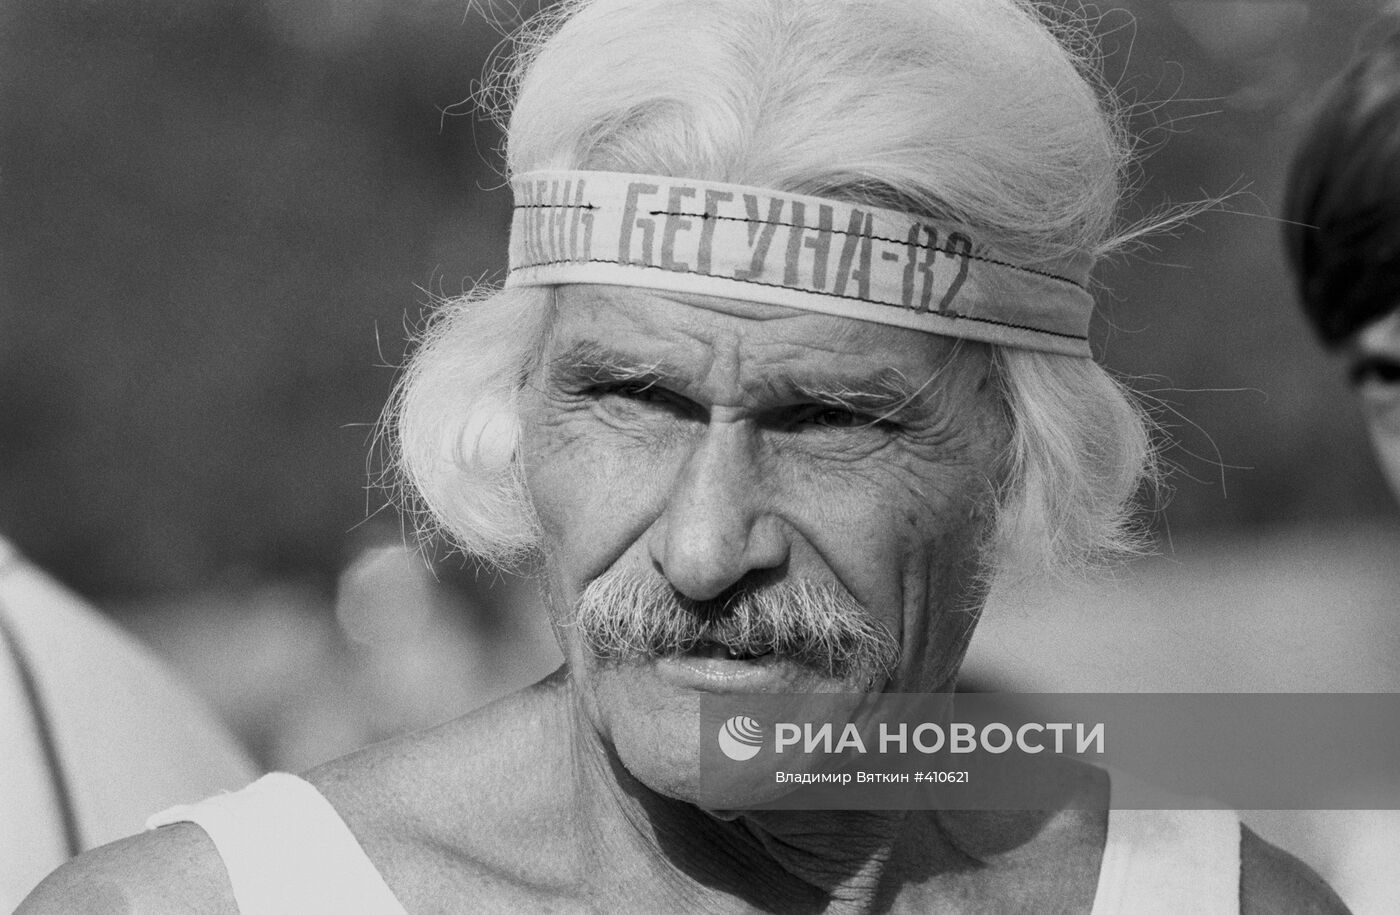 Ветеран "Клуба любителей бега" 76-летний Михаил Котляров